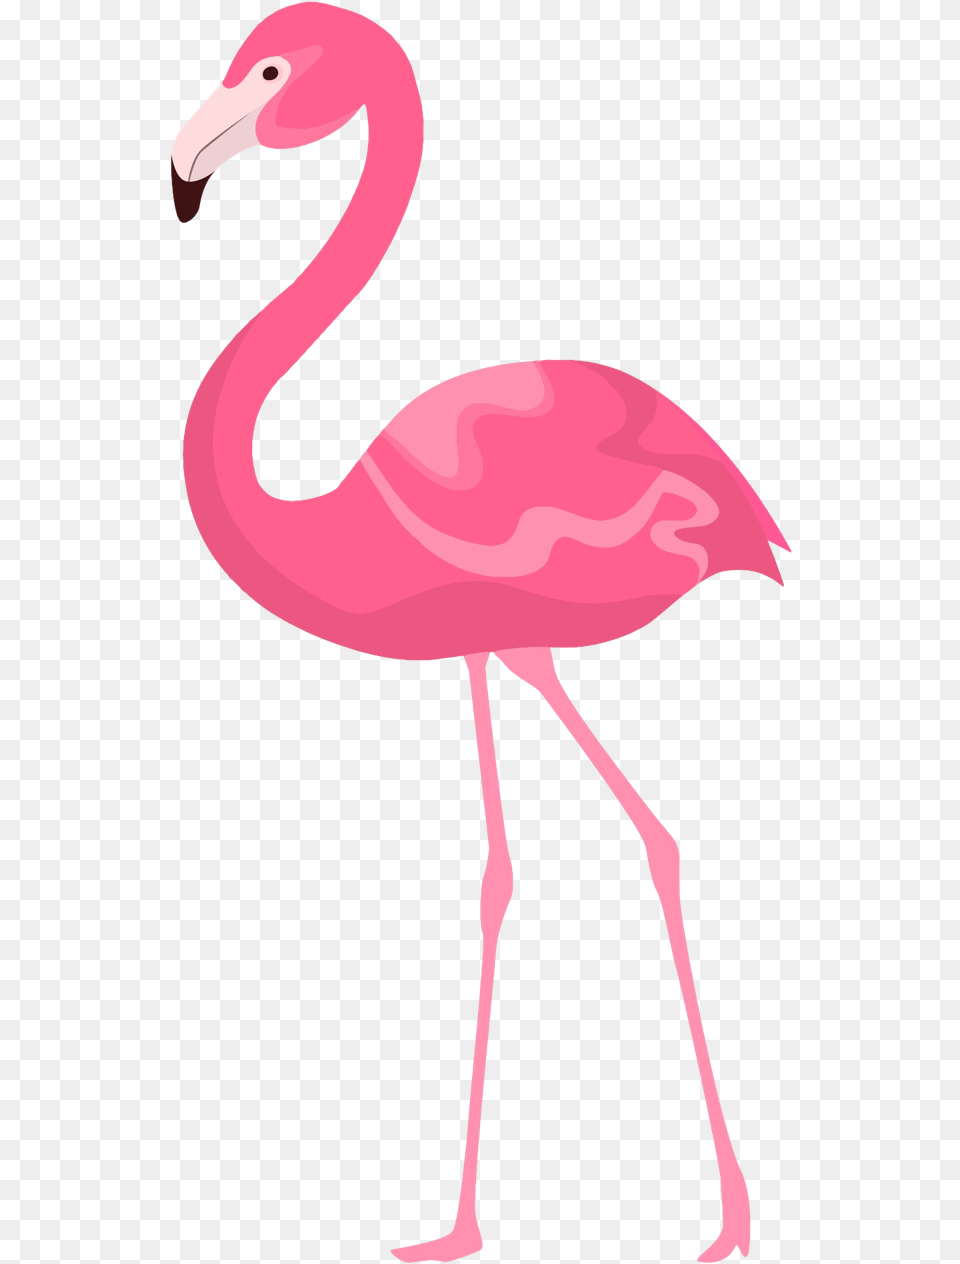 Flamingo Clipart Quotes Flamencos Rosados En Una Pata, Animal, Bird Free Png Download